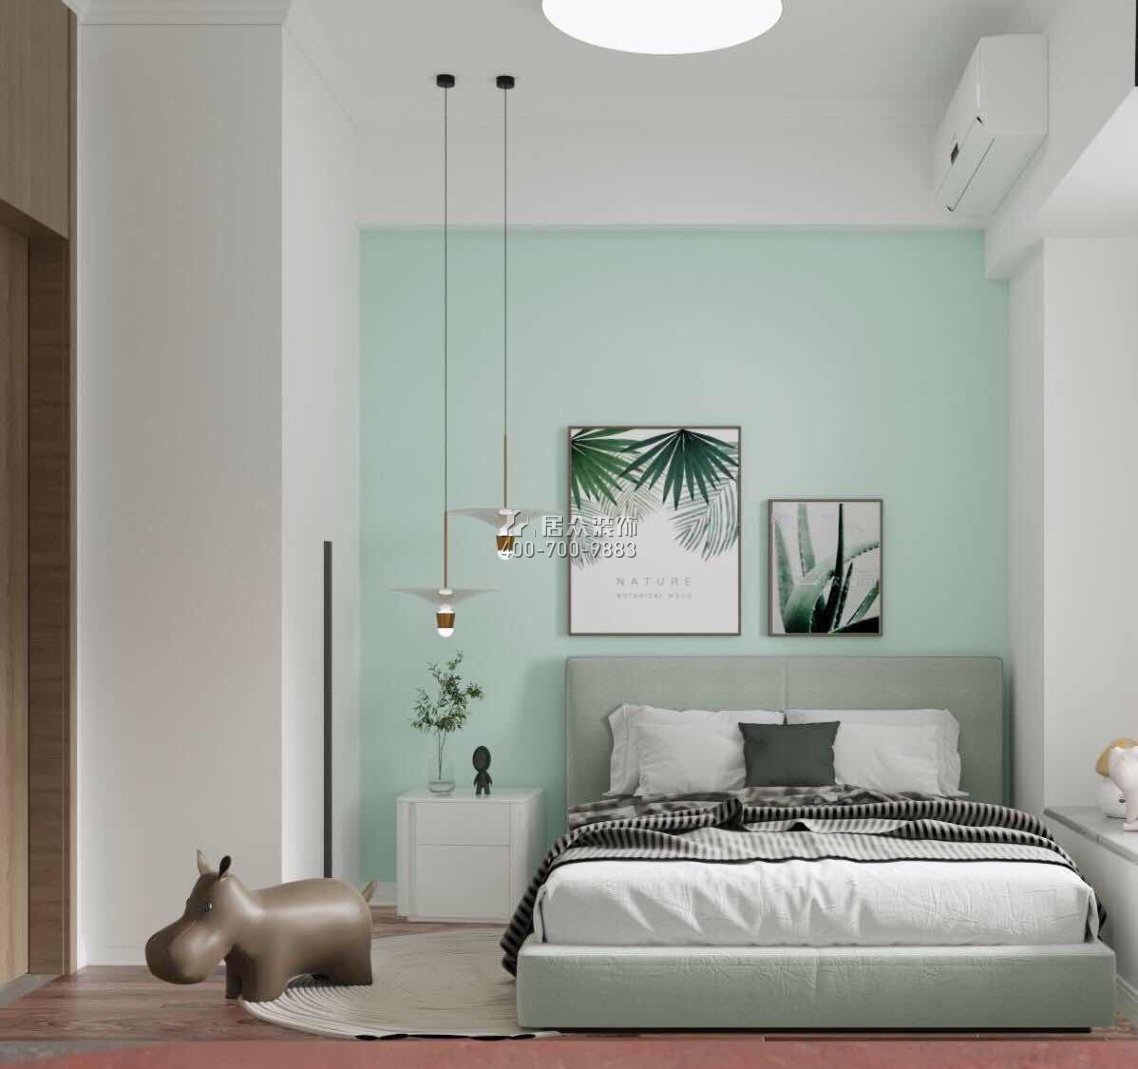 新錦安雅園193平方米現代簡約風格平層戶型臥室裝修效果圖